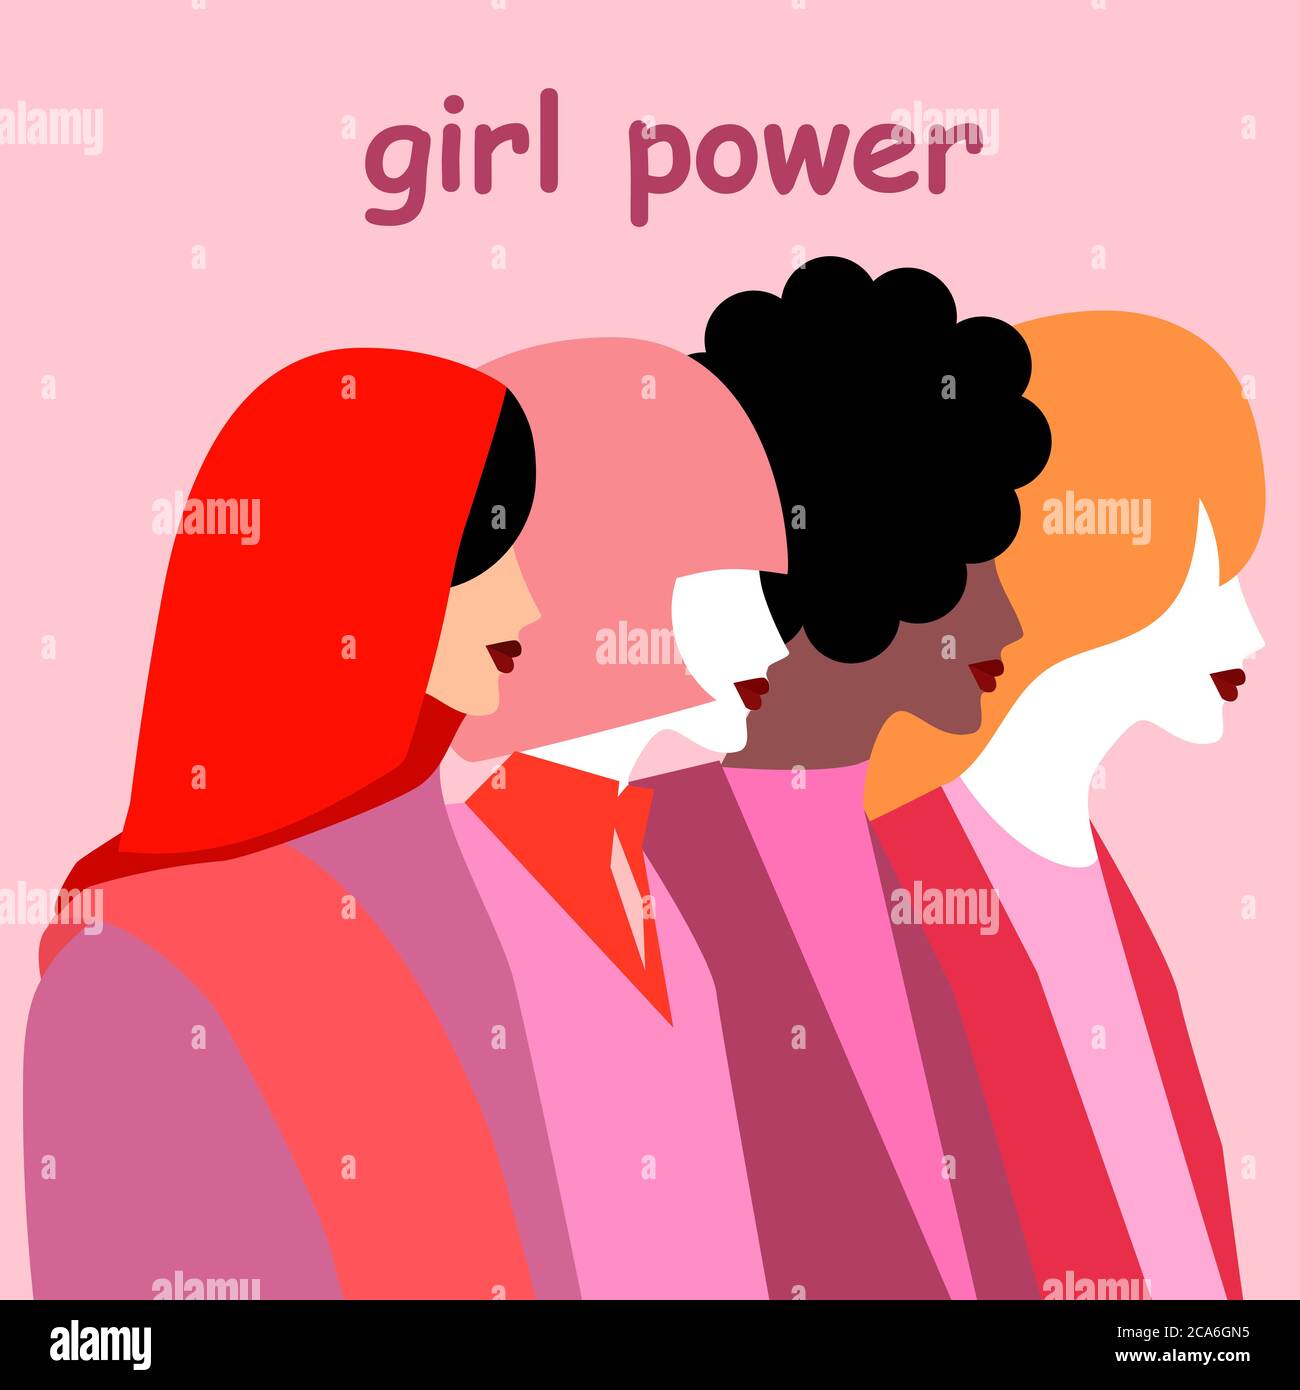 La forza della ragazza. Il gruppo di ragazze di varie razze e nazionalità in piedi di profilo. Il concetto del potere, del potere delle donne. l'ide Illustrazione Vettoriale